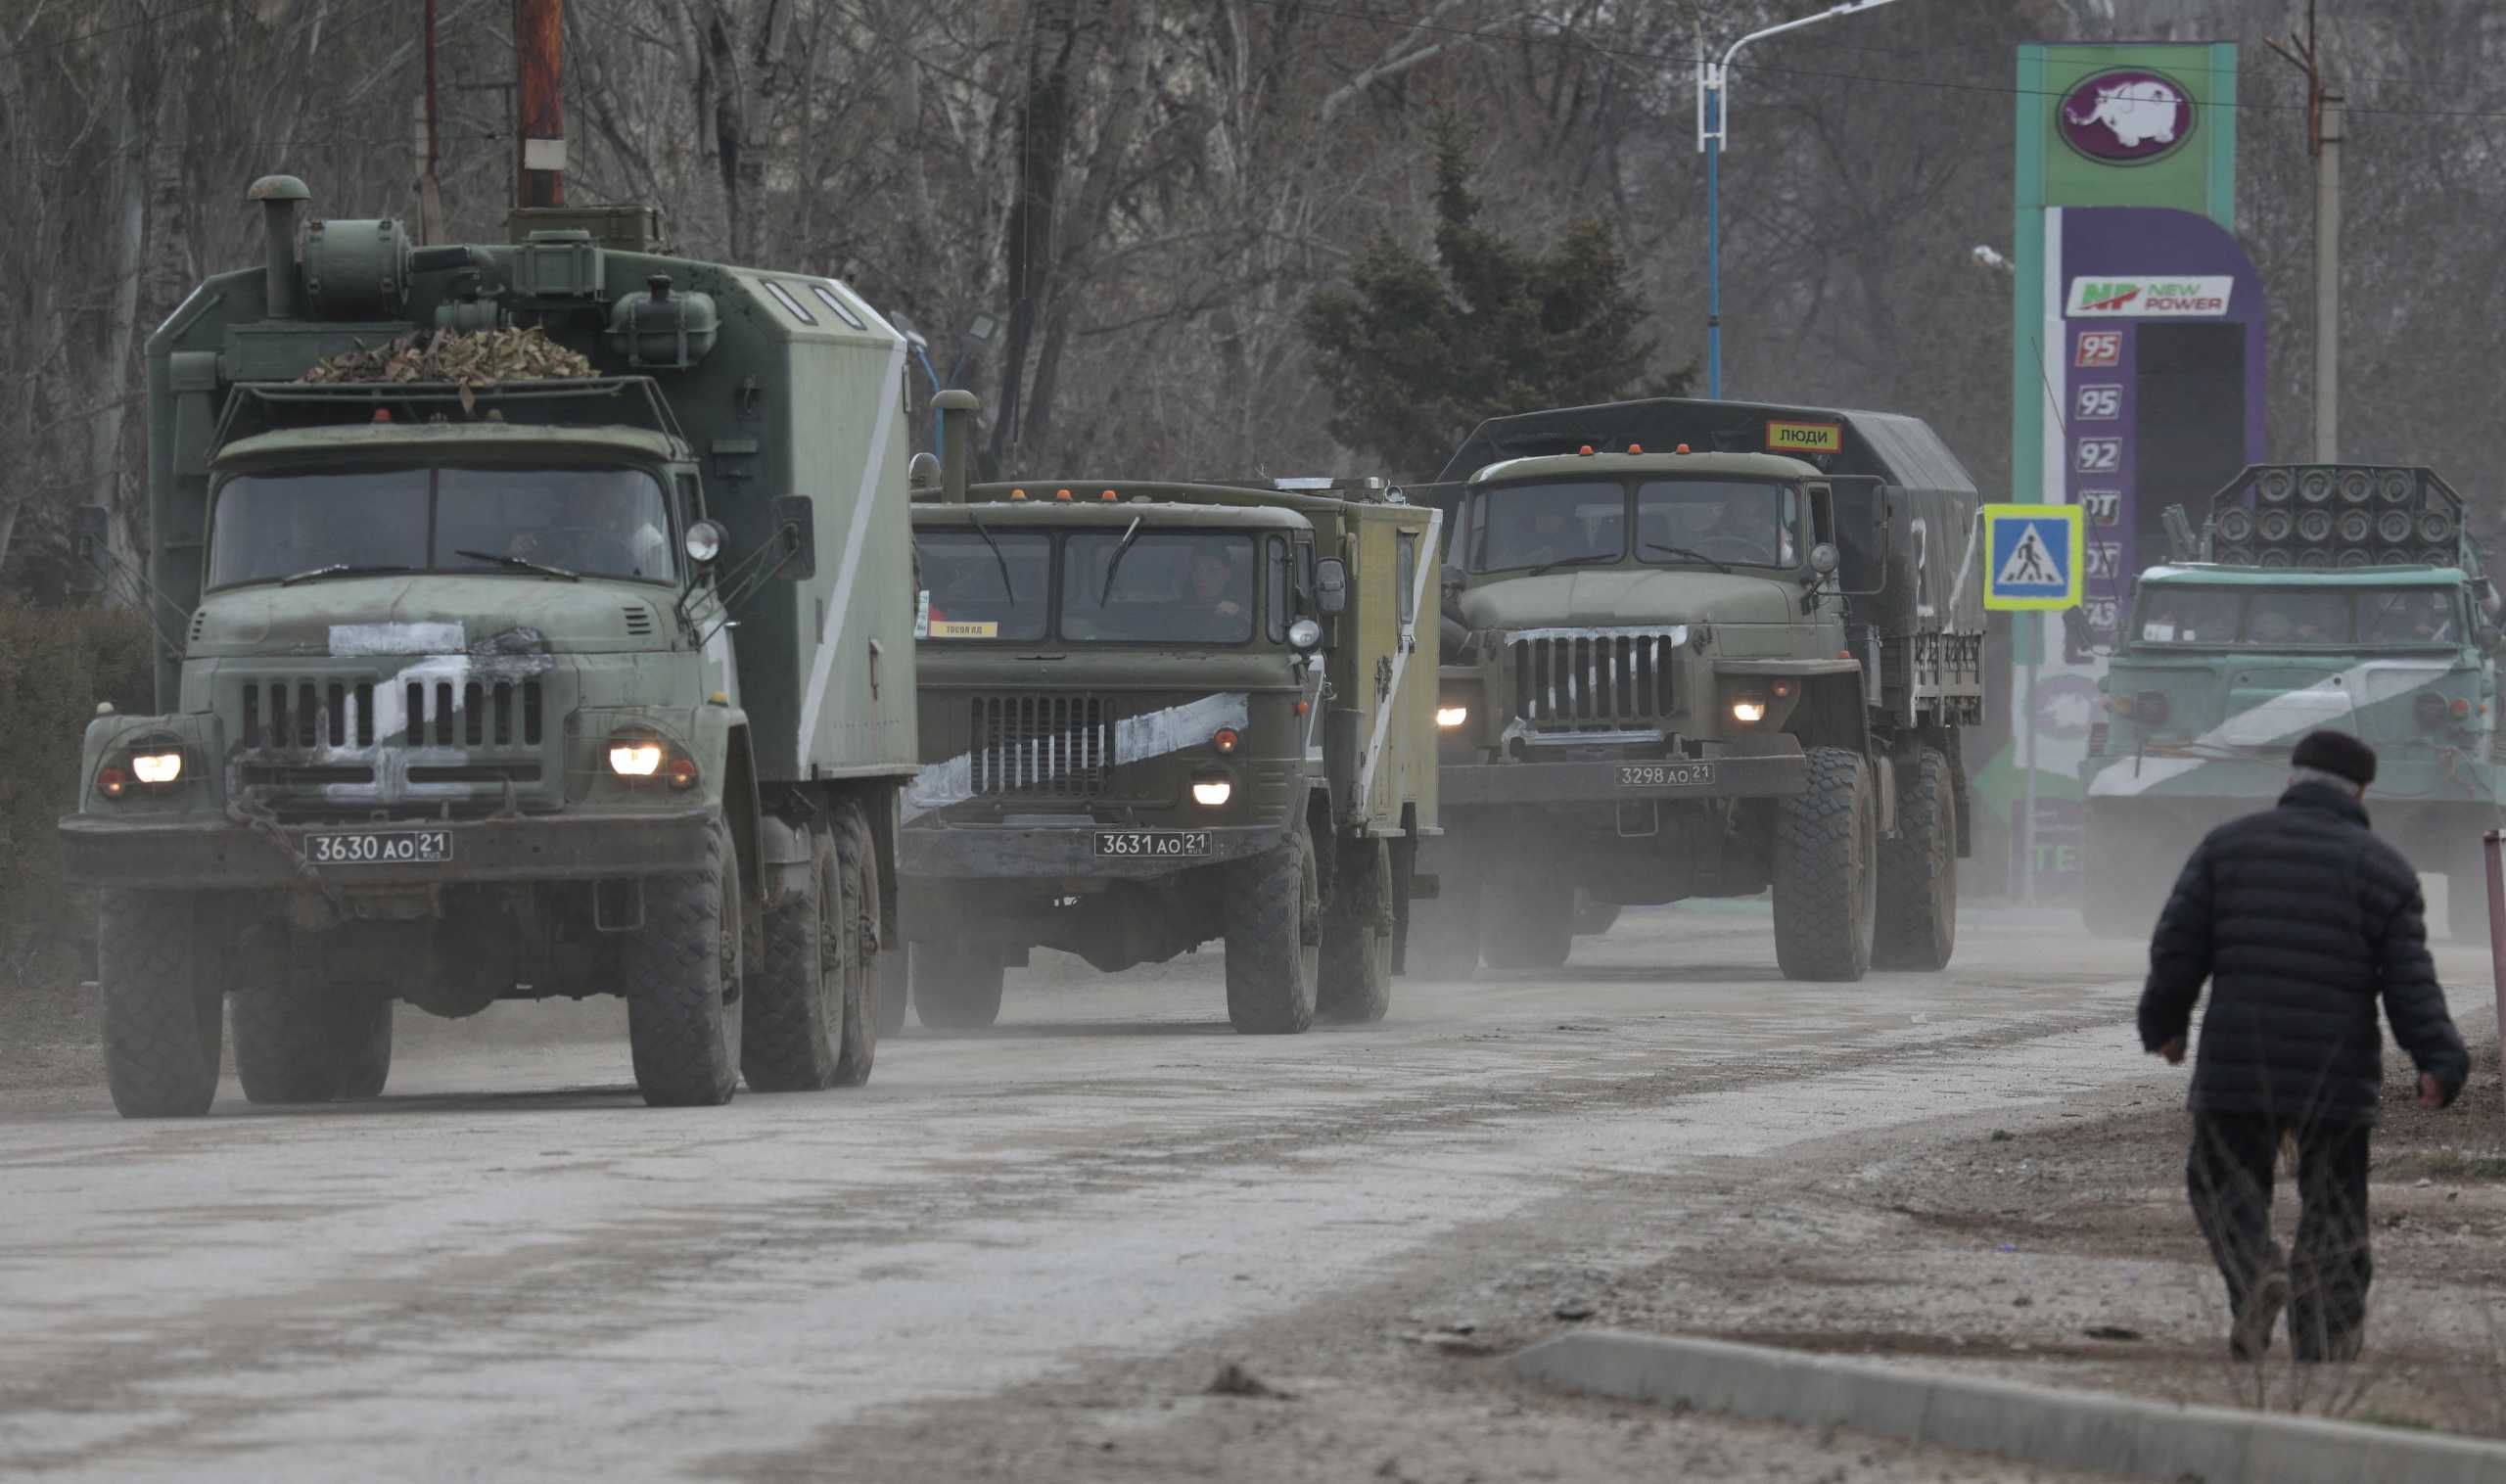 Ρωσία: Το υπουργείο Άμυνας διαψεύδει τους στρατιώτες του για την «ακατανόητη» επίθεση που κατήγγειλαν